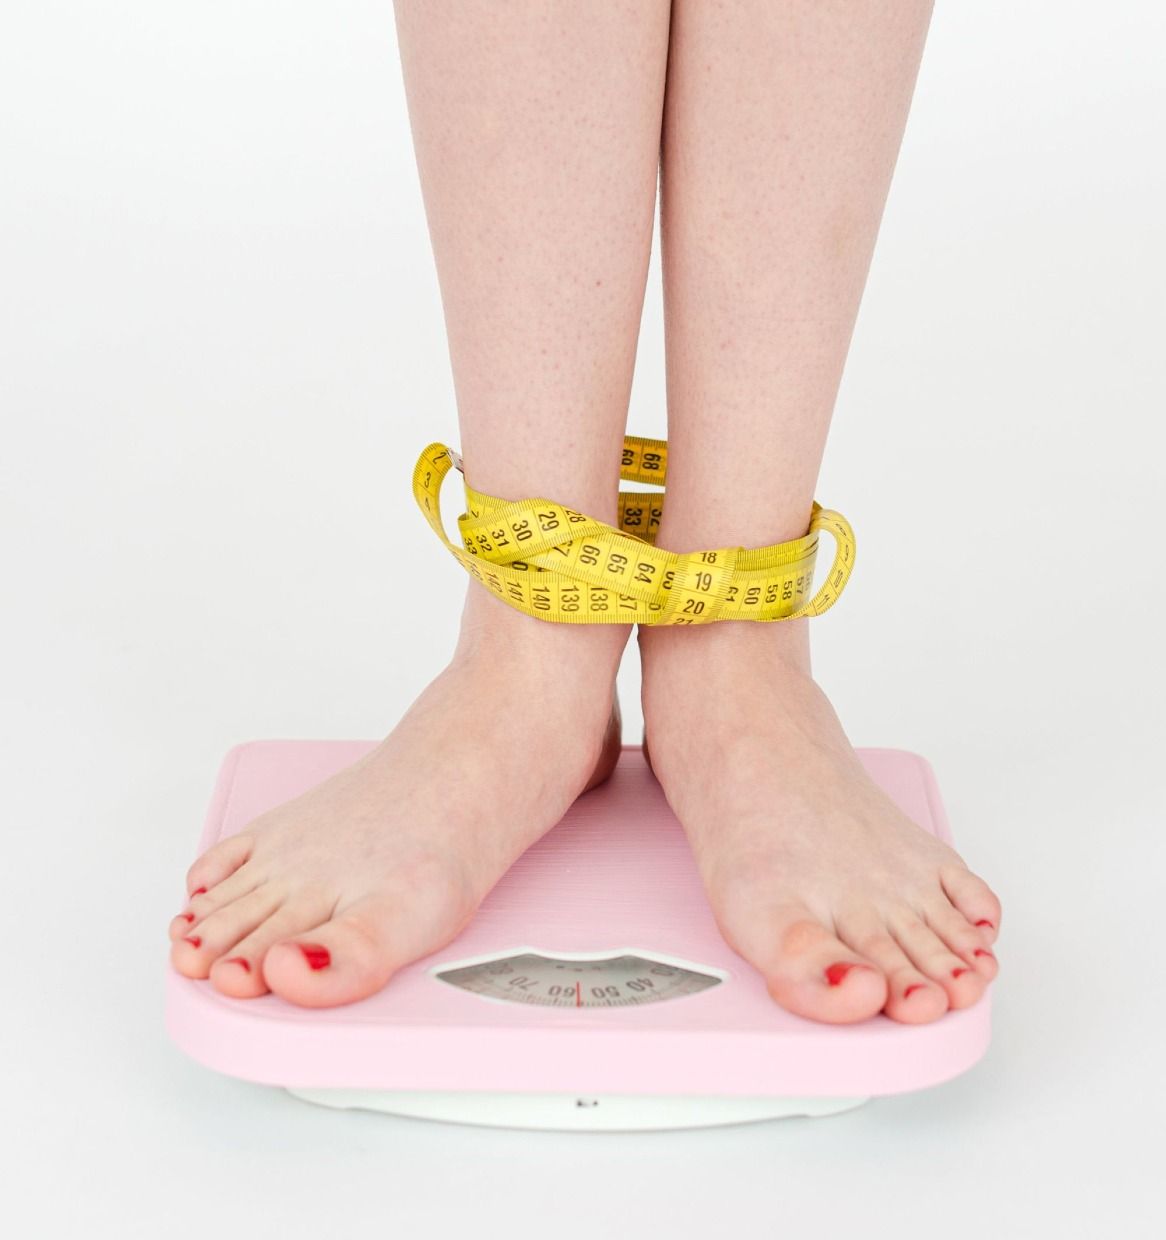 열심히 다이어트 중인데도 몸무게 변화가 없다면? 몸무게가 안 줄어드는 핵심적인 이유